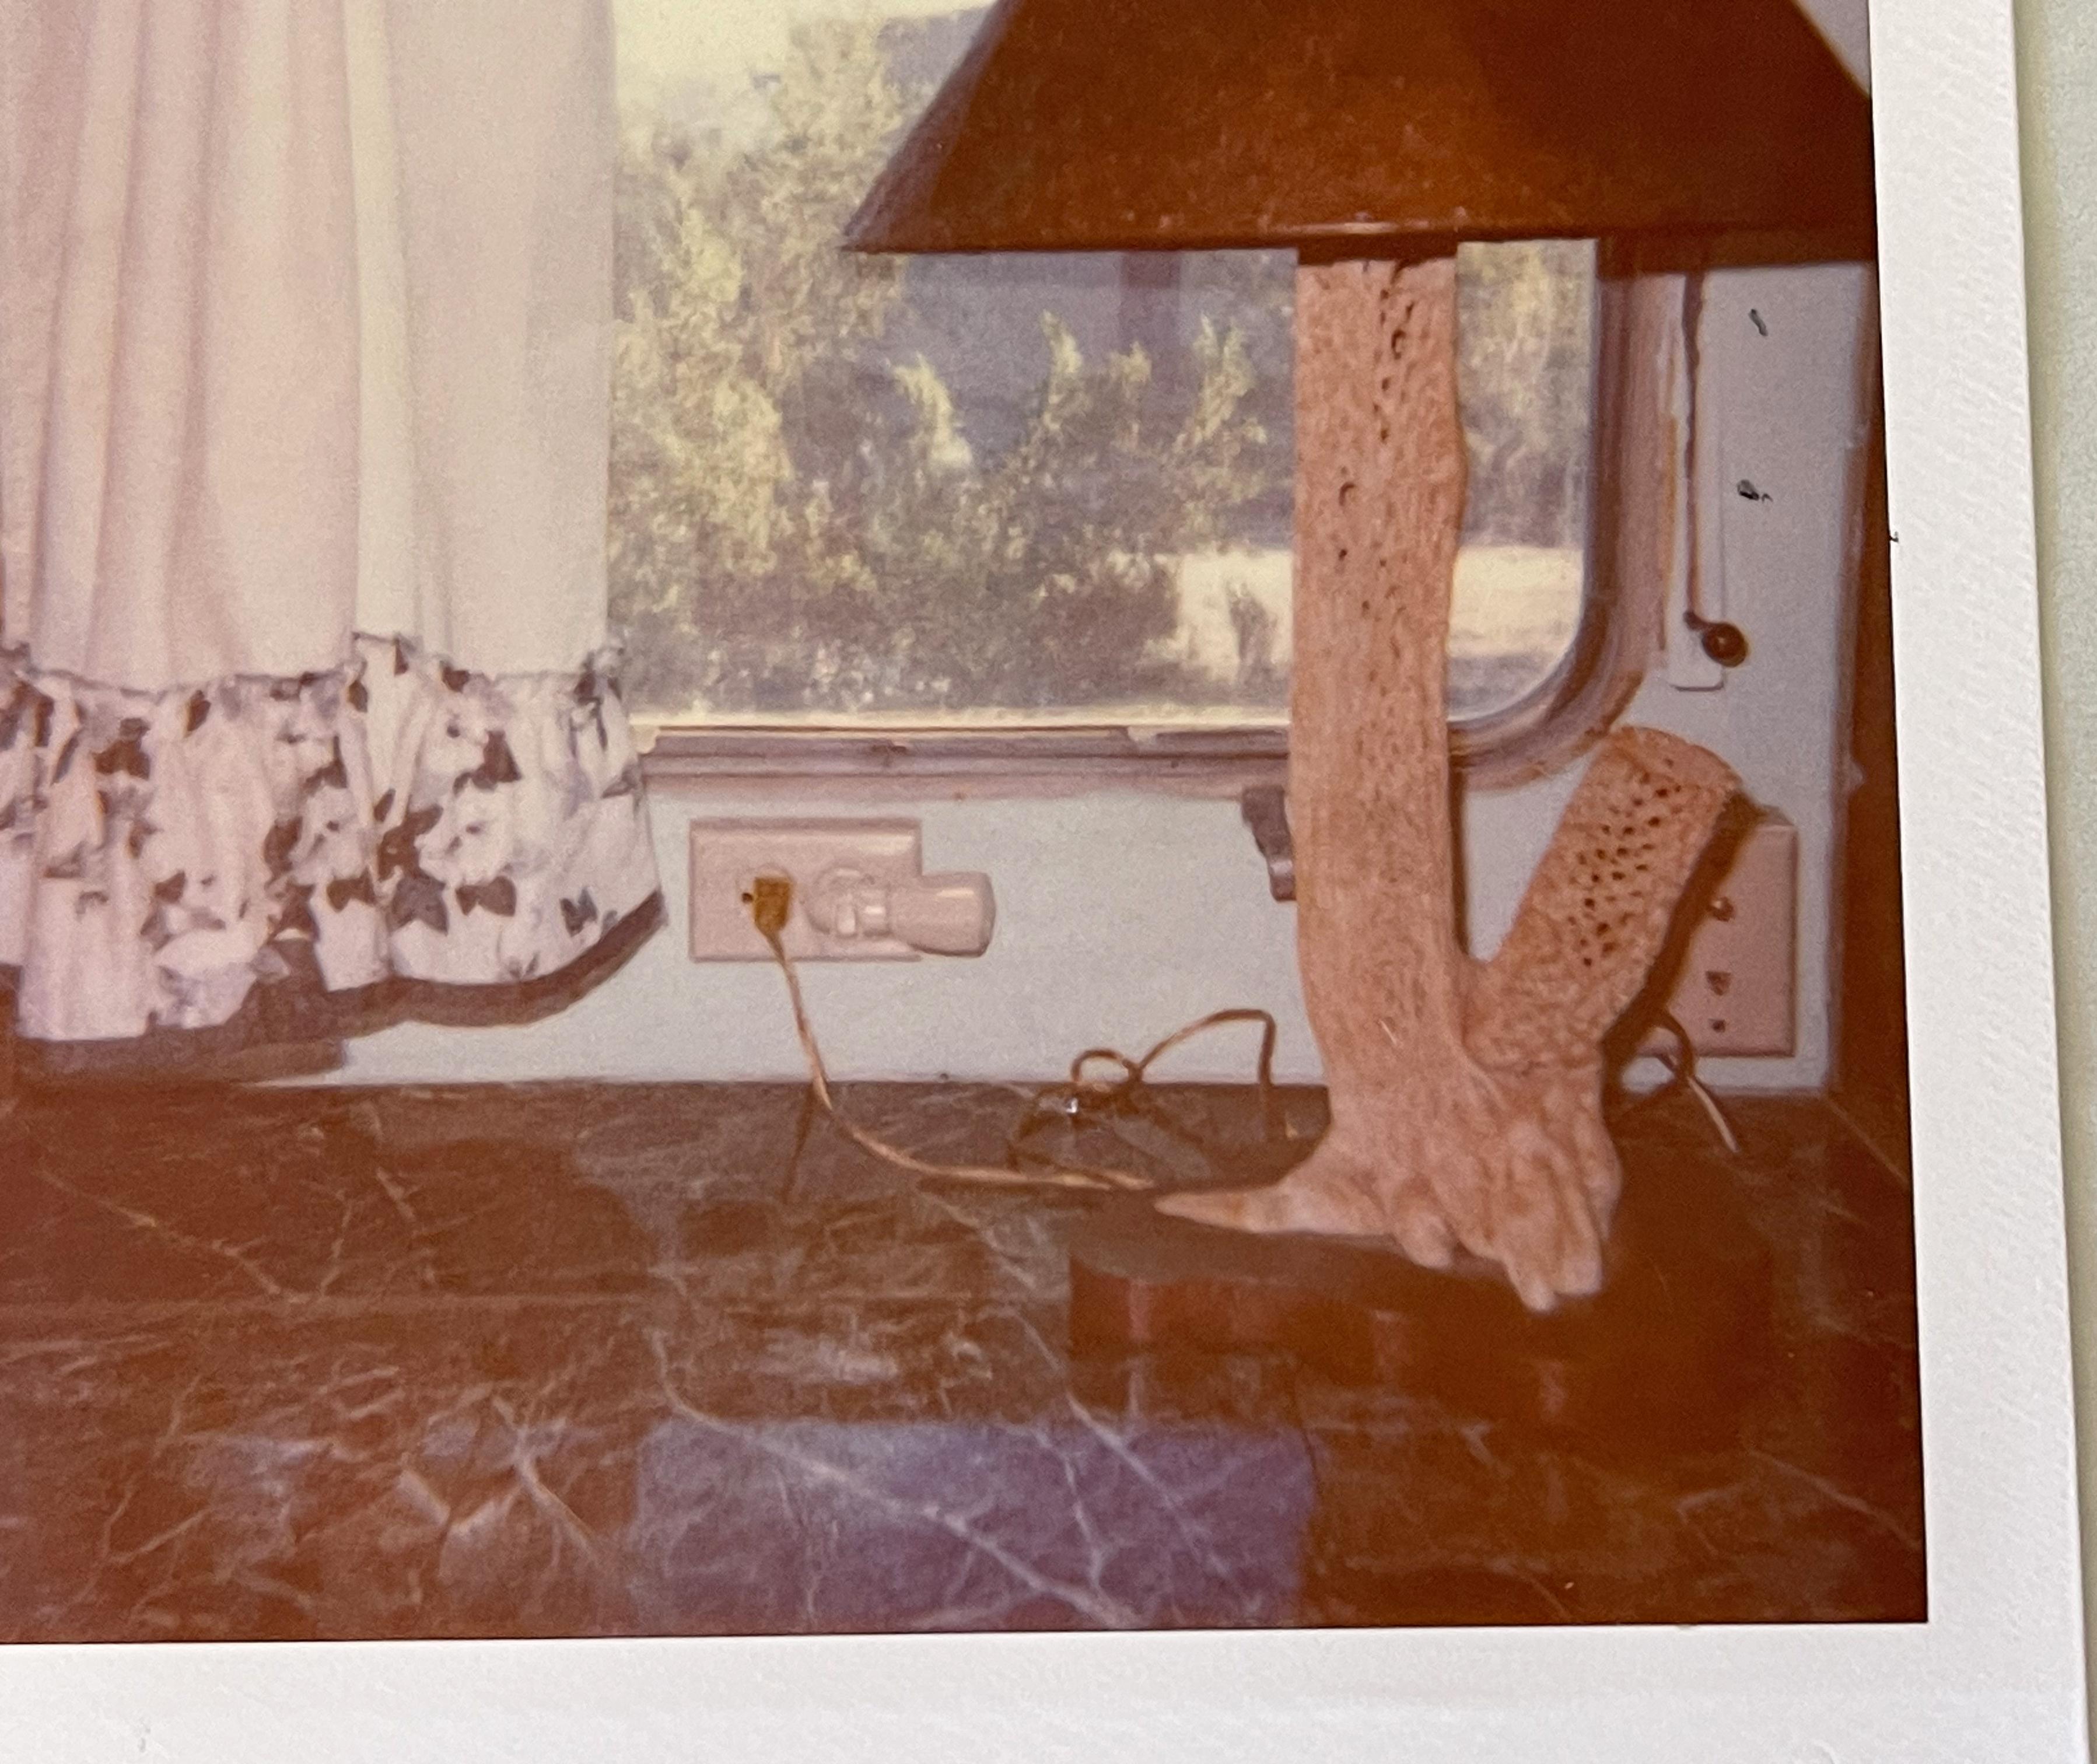 La lampe (Sidewinder) - Pièce unique d'origine Polaroid - Contemporain Photograph par Stefanie Schneider